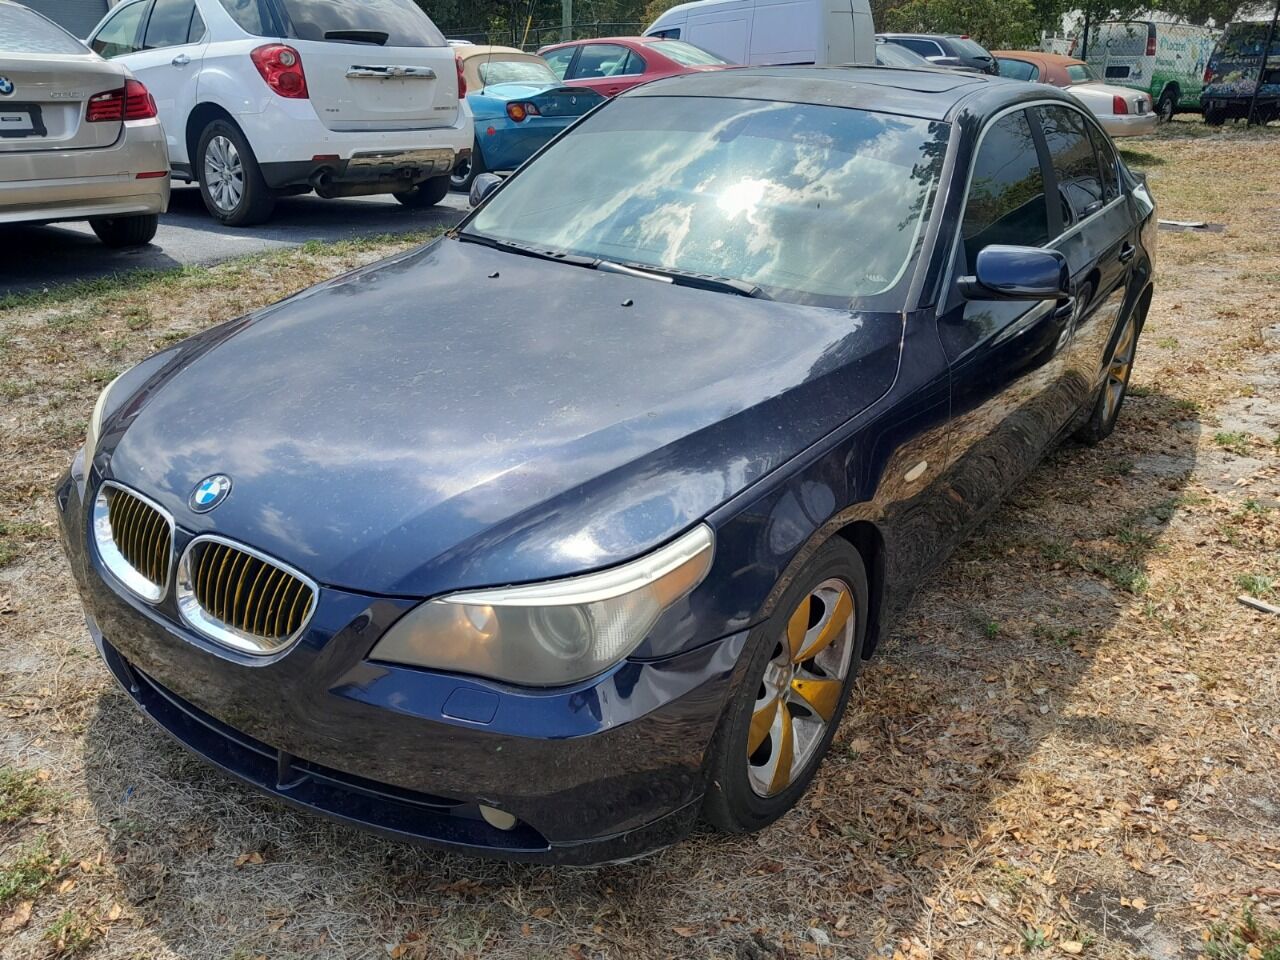 2007 BMW 525i Sedan - $2,950